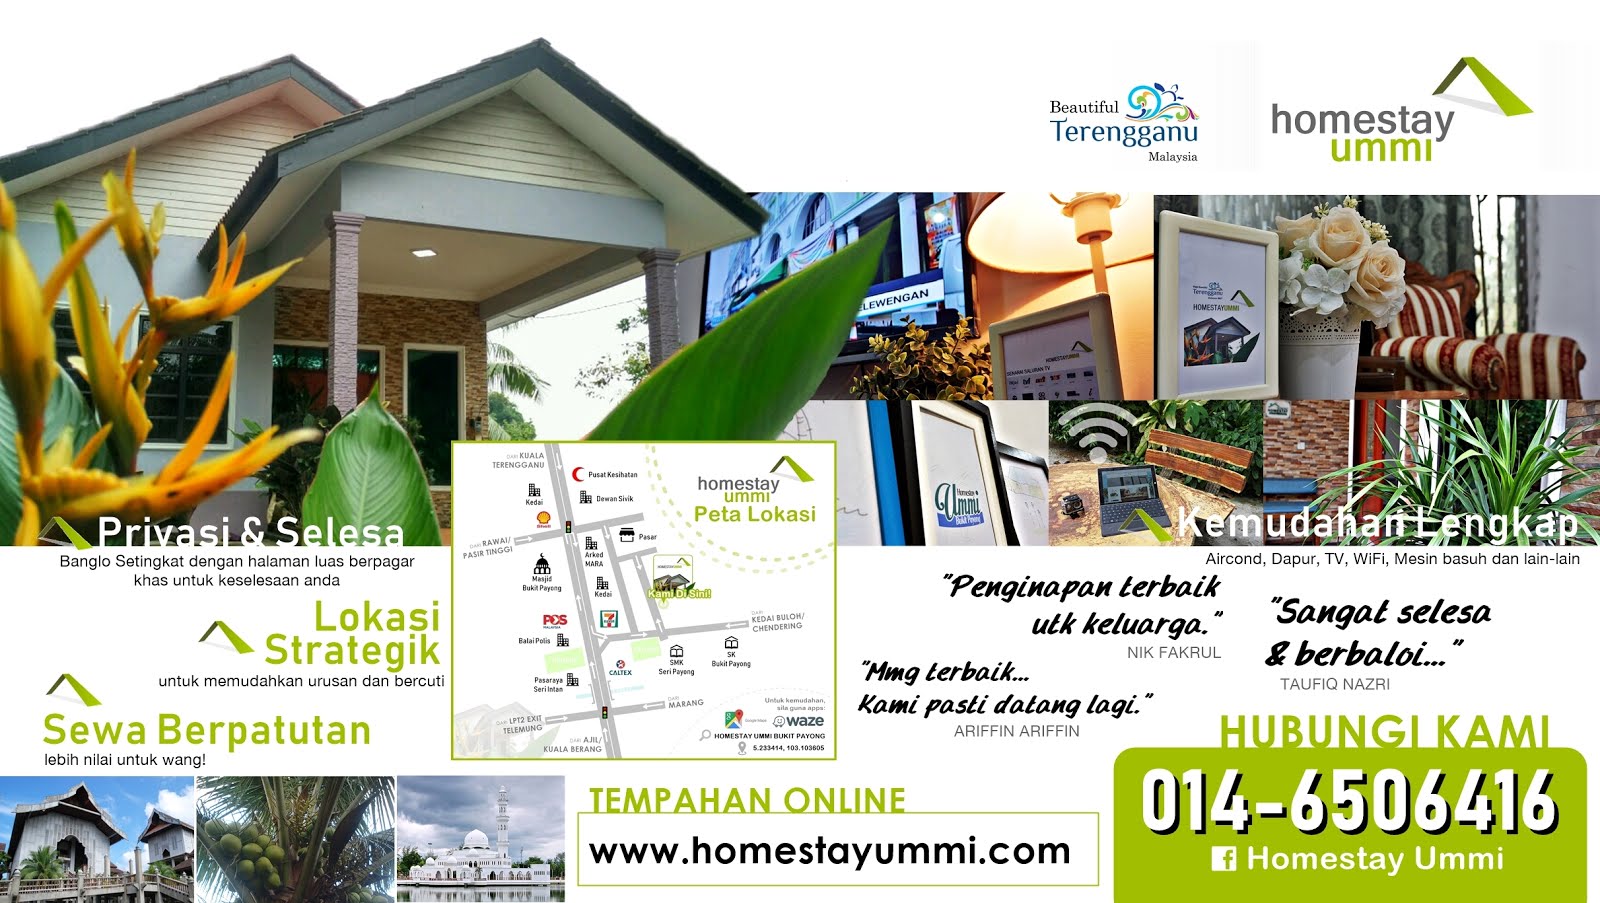 Homestay Ummi, Bukit Payong Terengganu